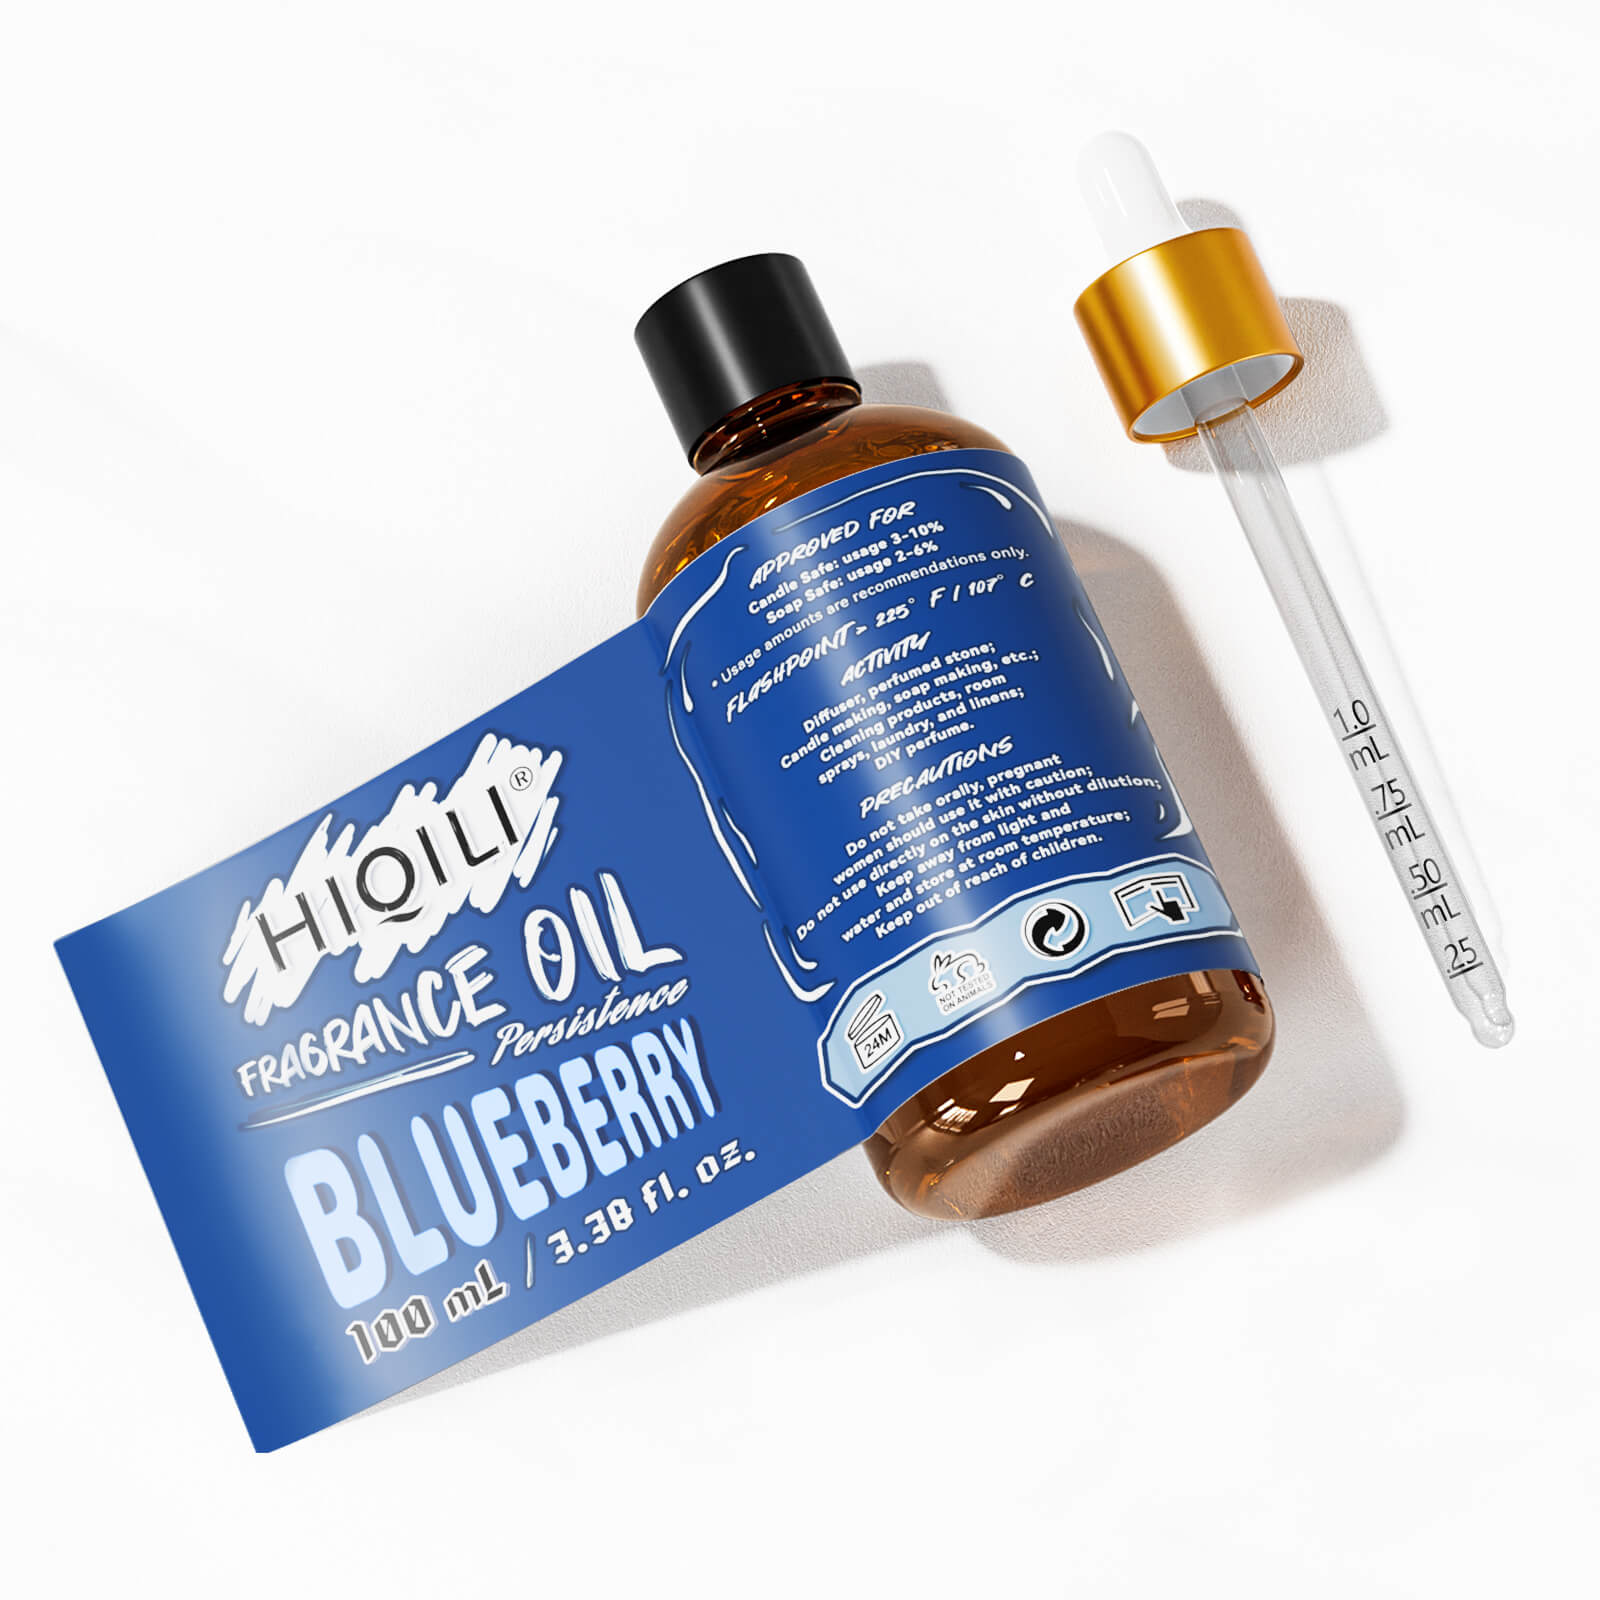 Blueberry Fragrance Oil